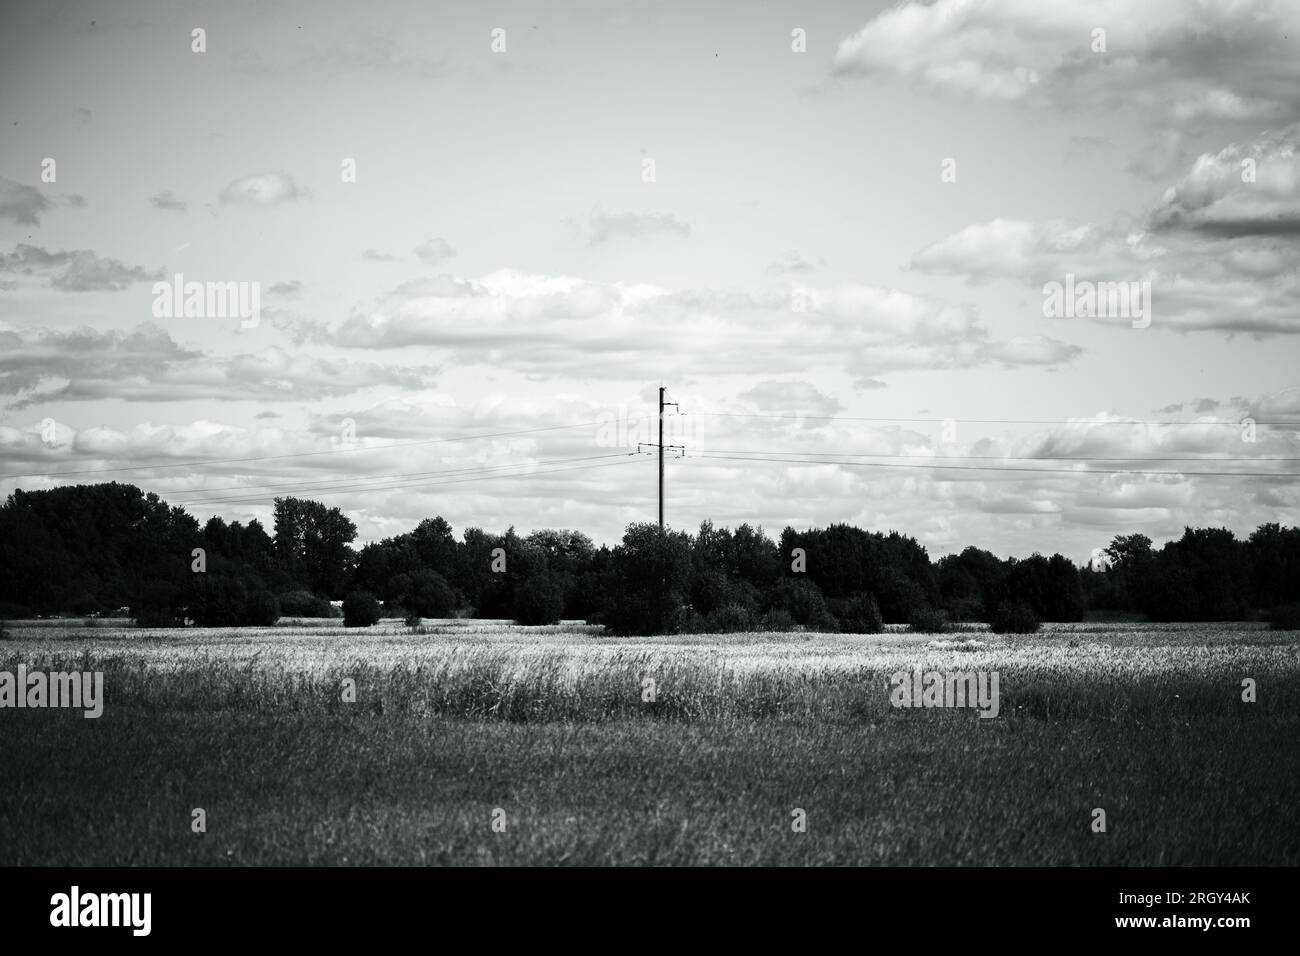 La foto in bianco e nero cattura un paesaggio rurale con vasti campi di grano e una linea elettrica sopraelevata contro un cielo nuvoloso. Campagna, spettacolo Foto Stock